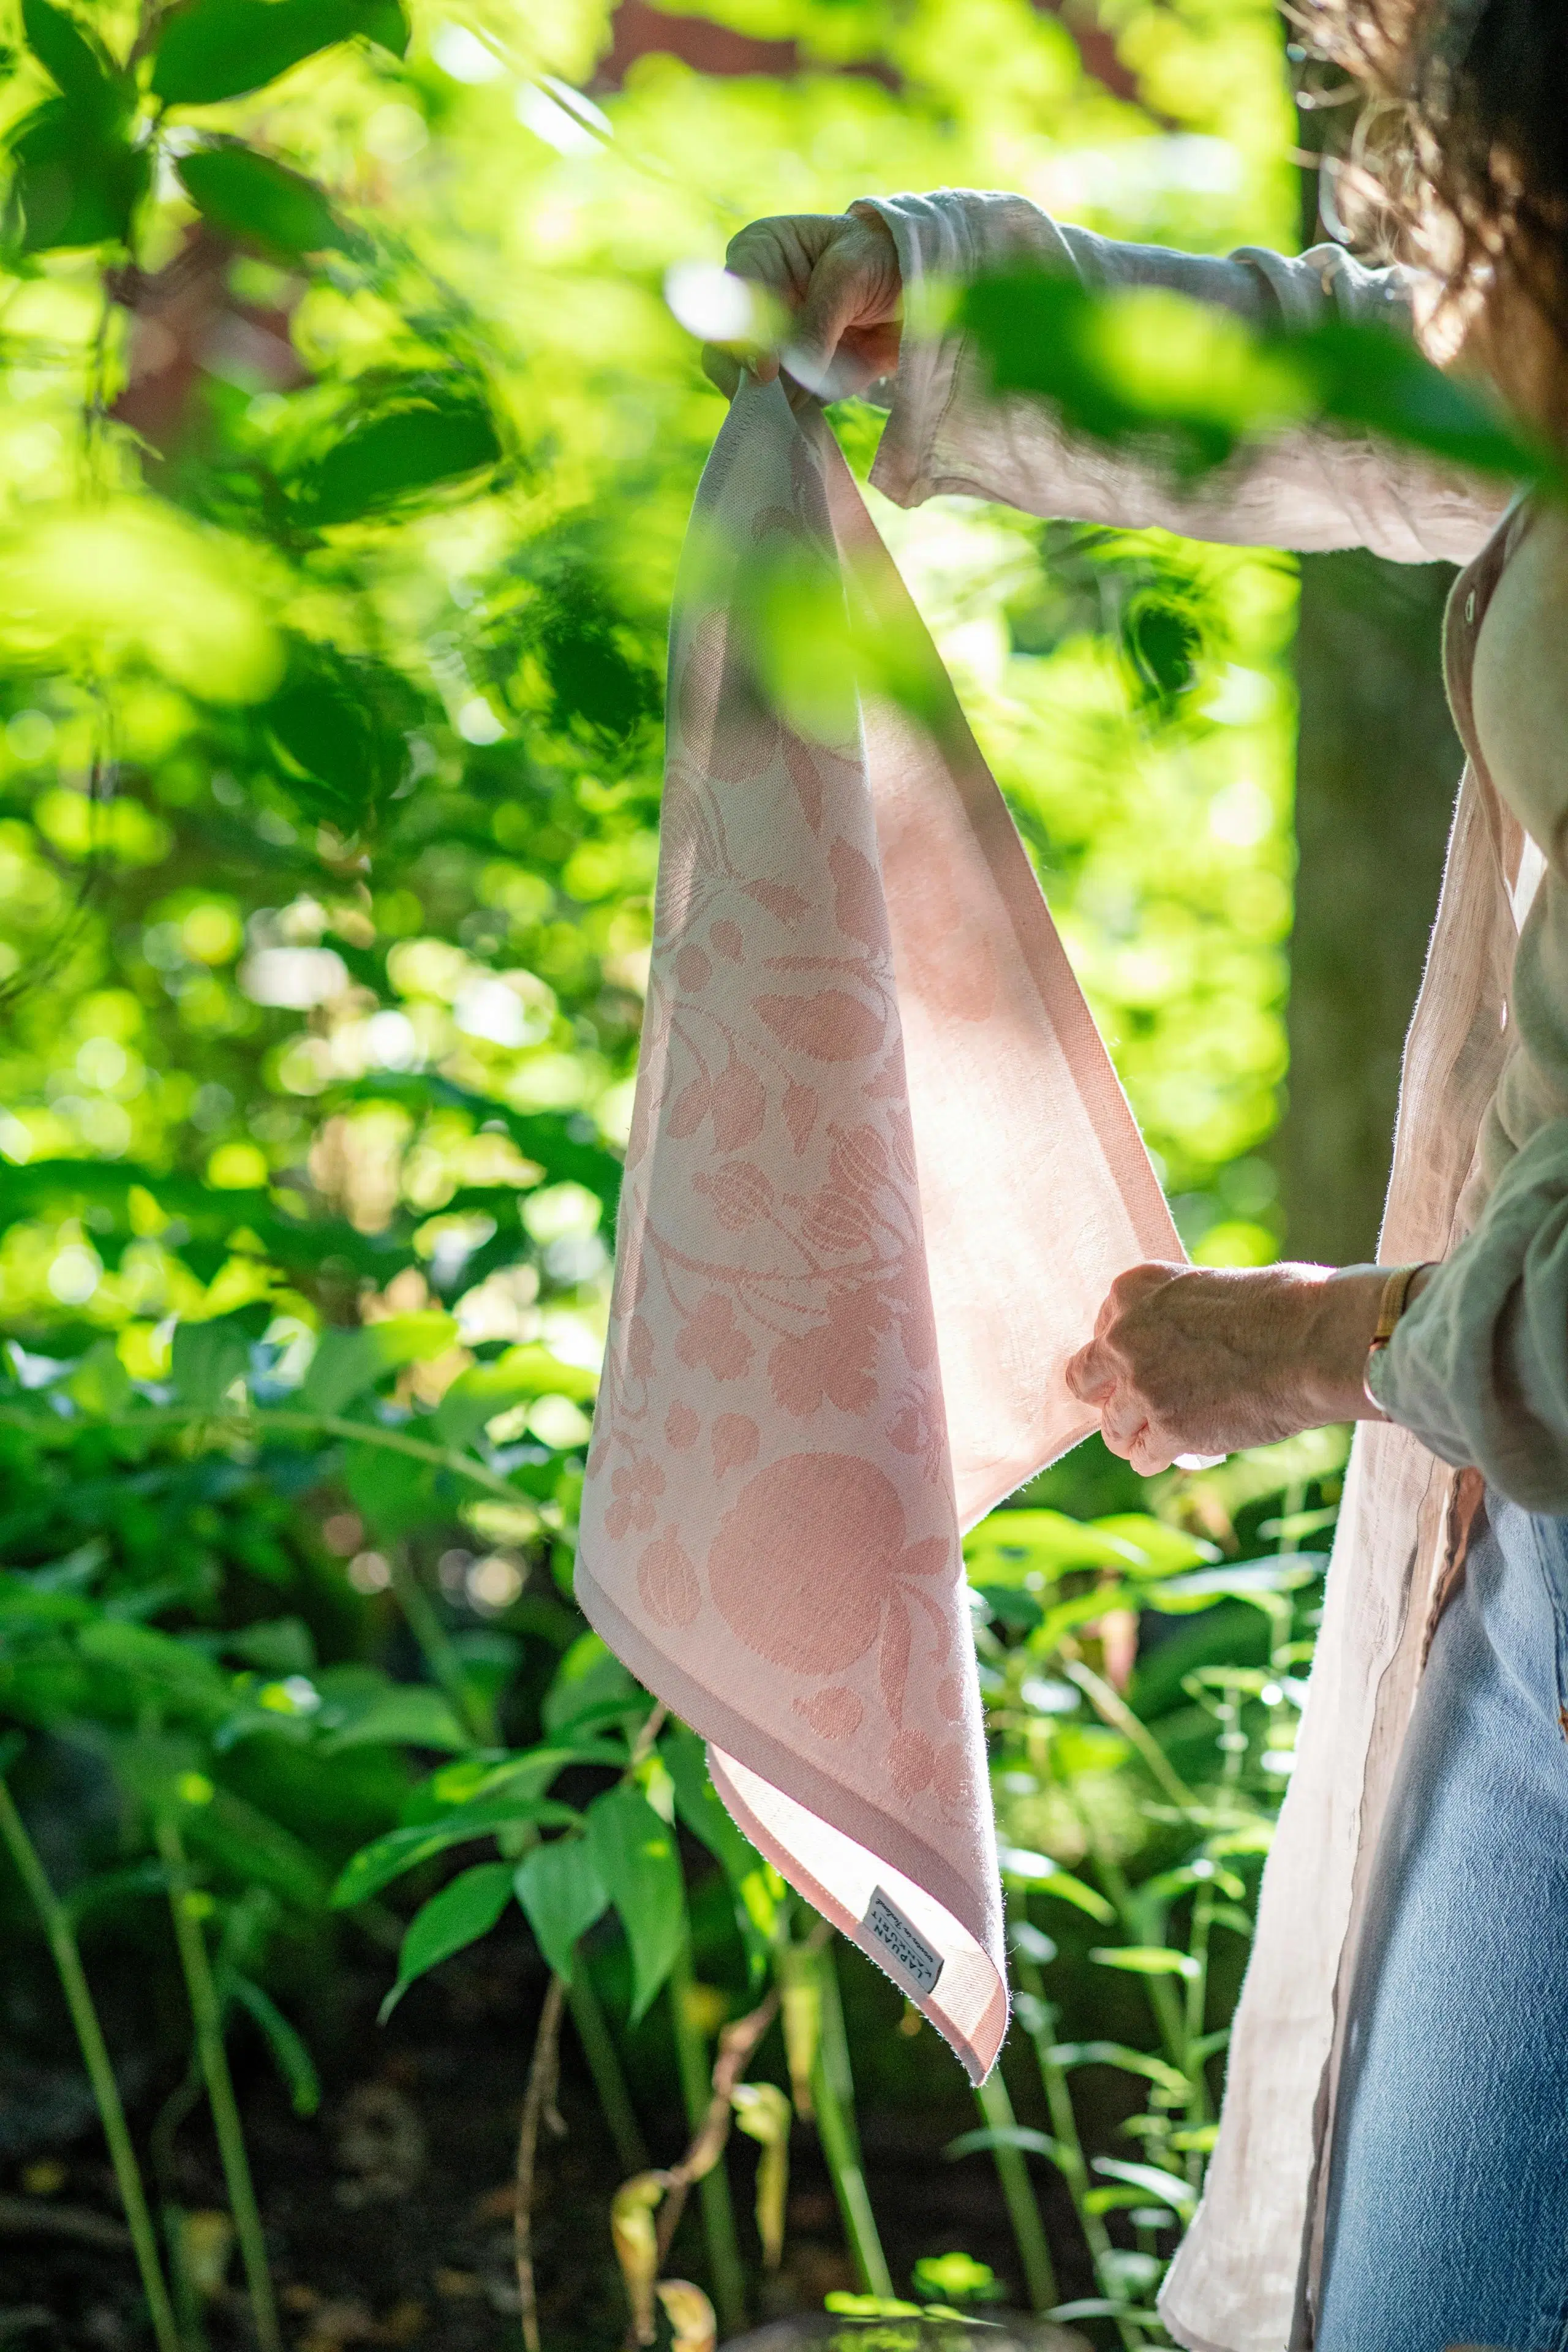 Lapuan Kankurit keittiöpyyhe-servietti Puutarha 46x46 cm valko-roosa pellava-puuvilla